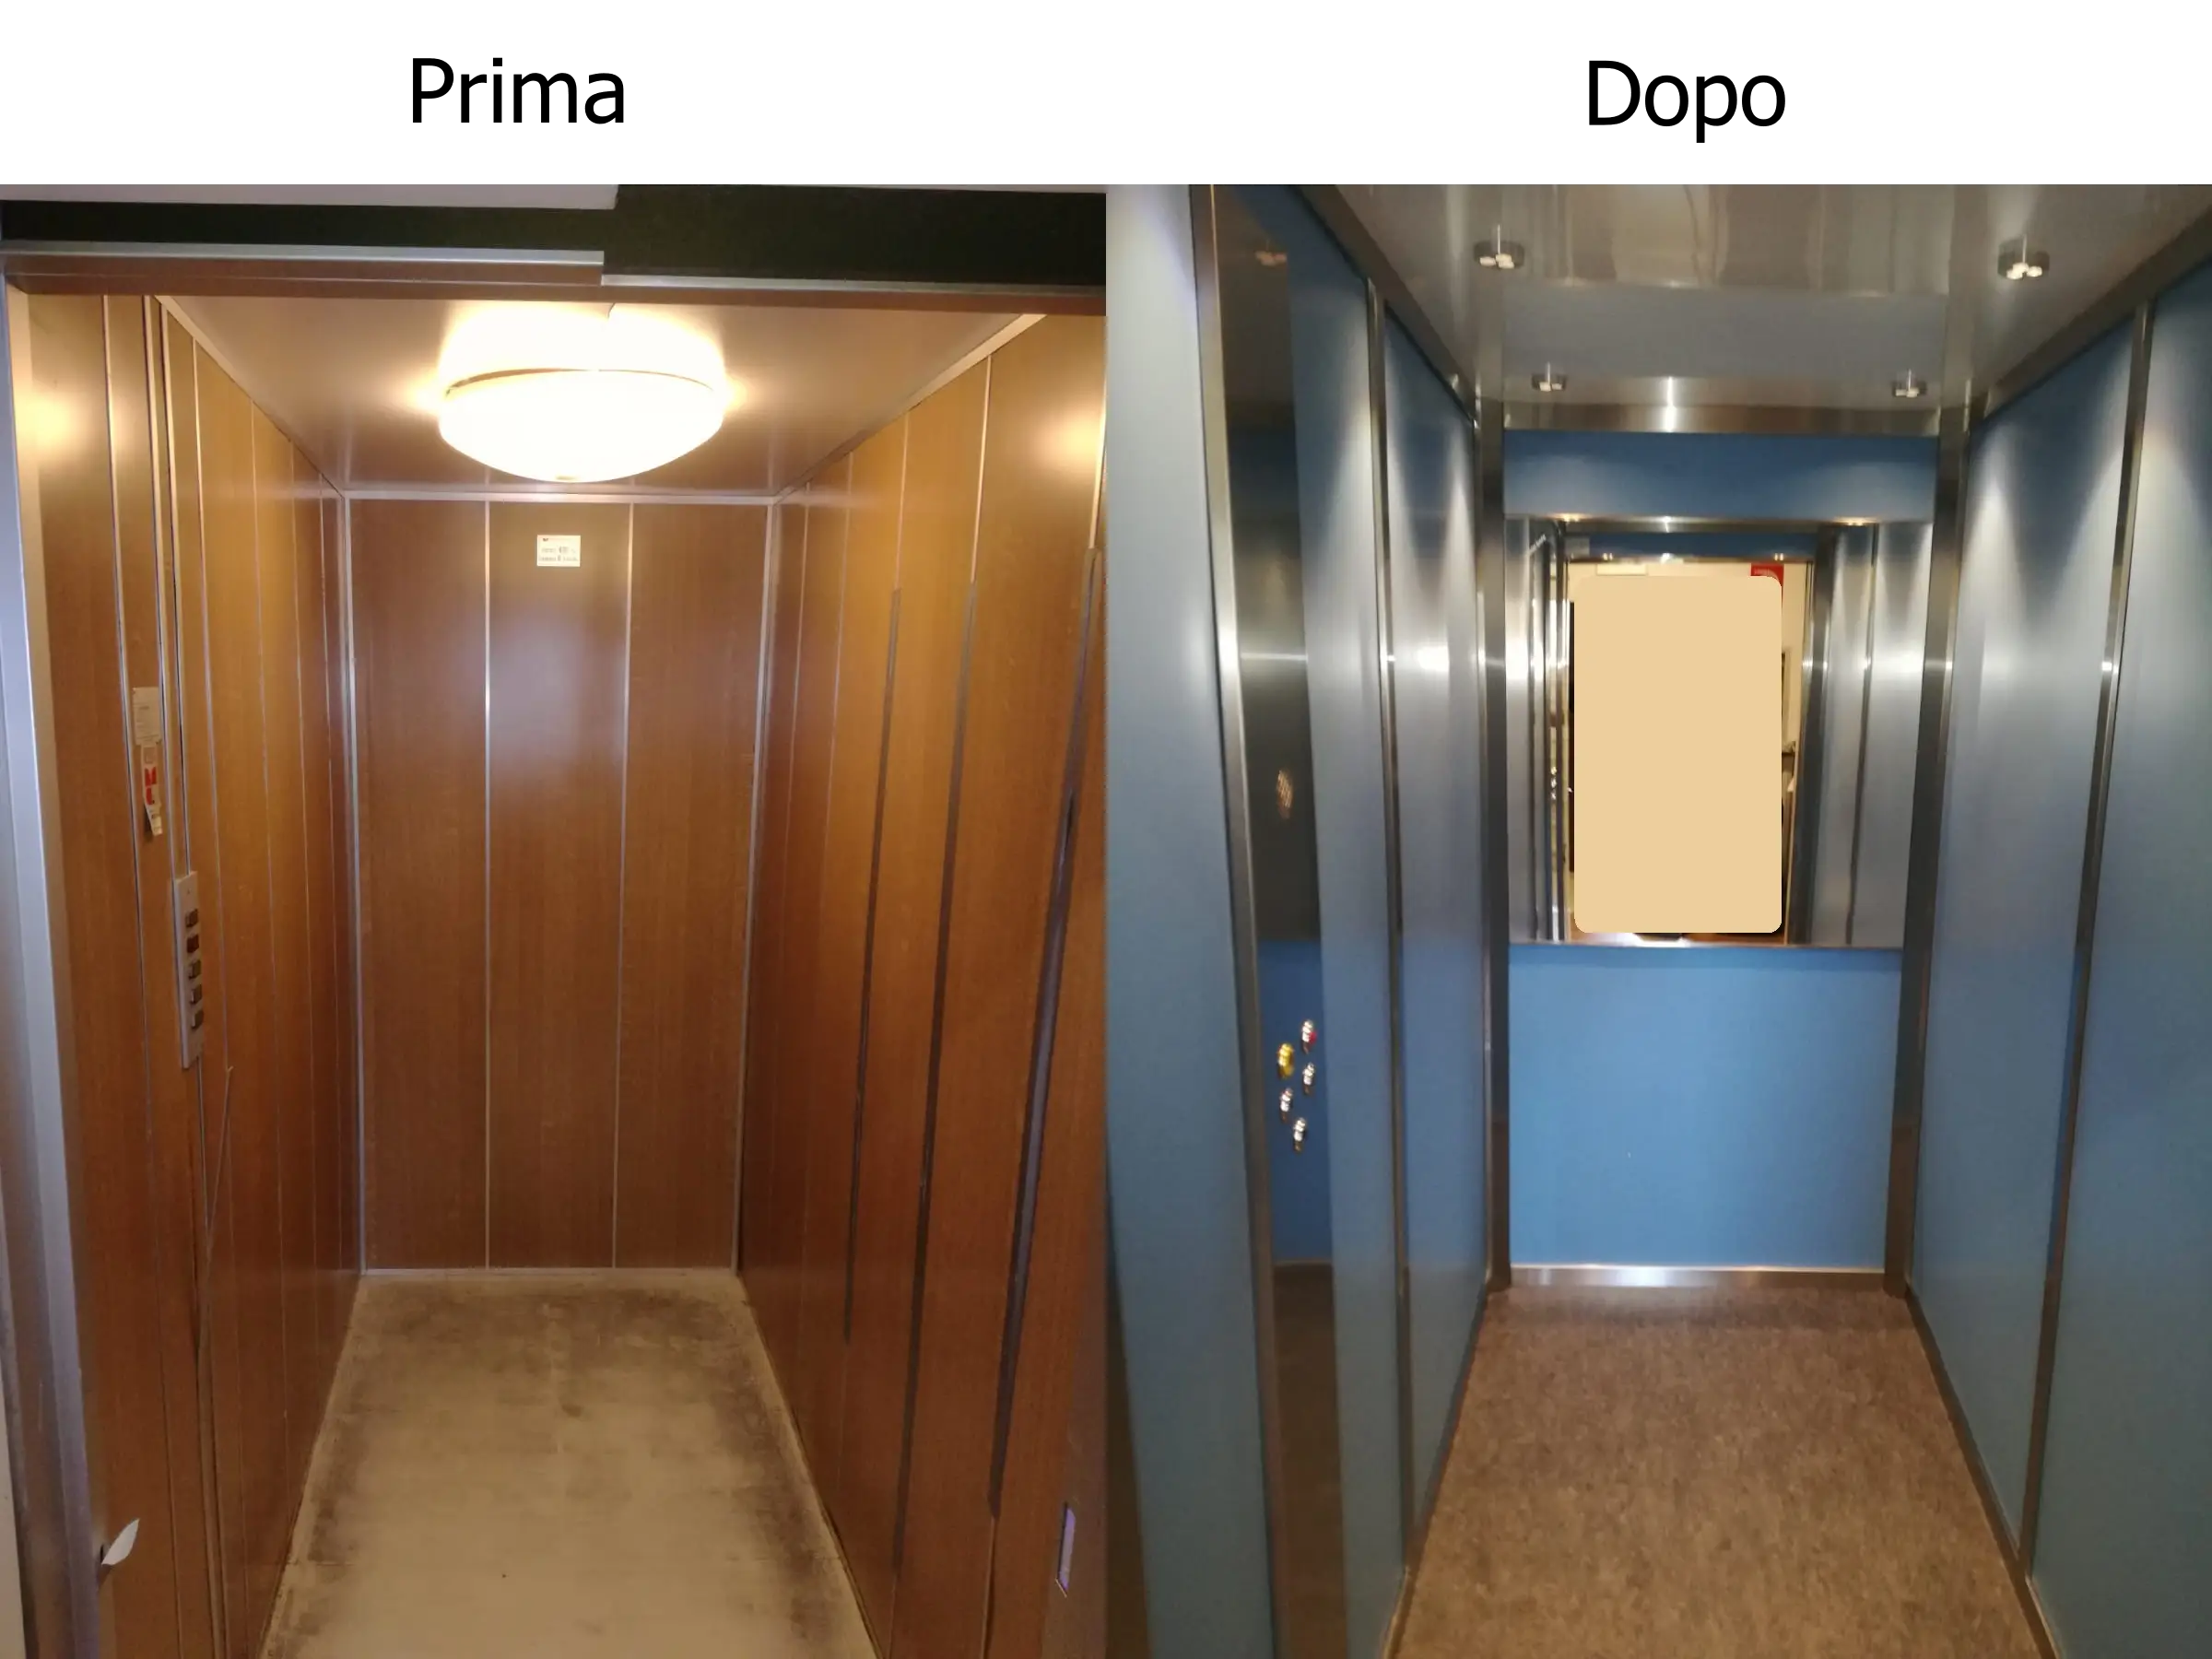 Vaglio srl - Linea cabine ascensori Torino - Restyling - Prima e dopo 4